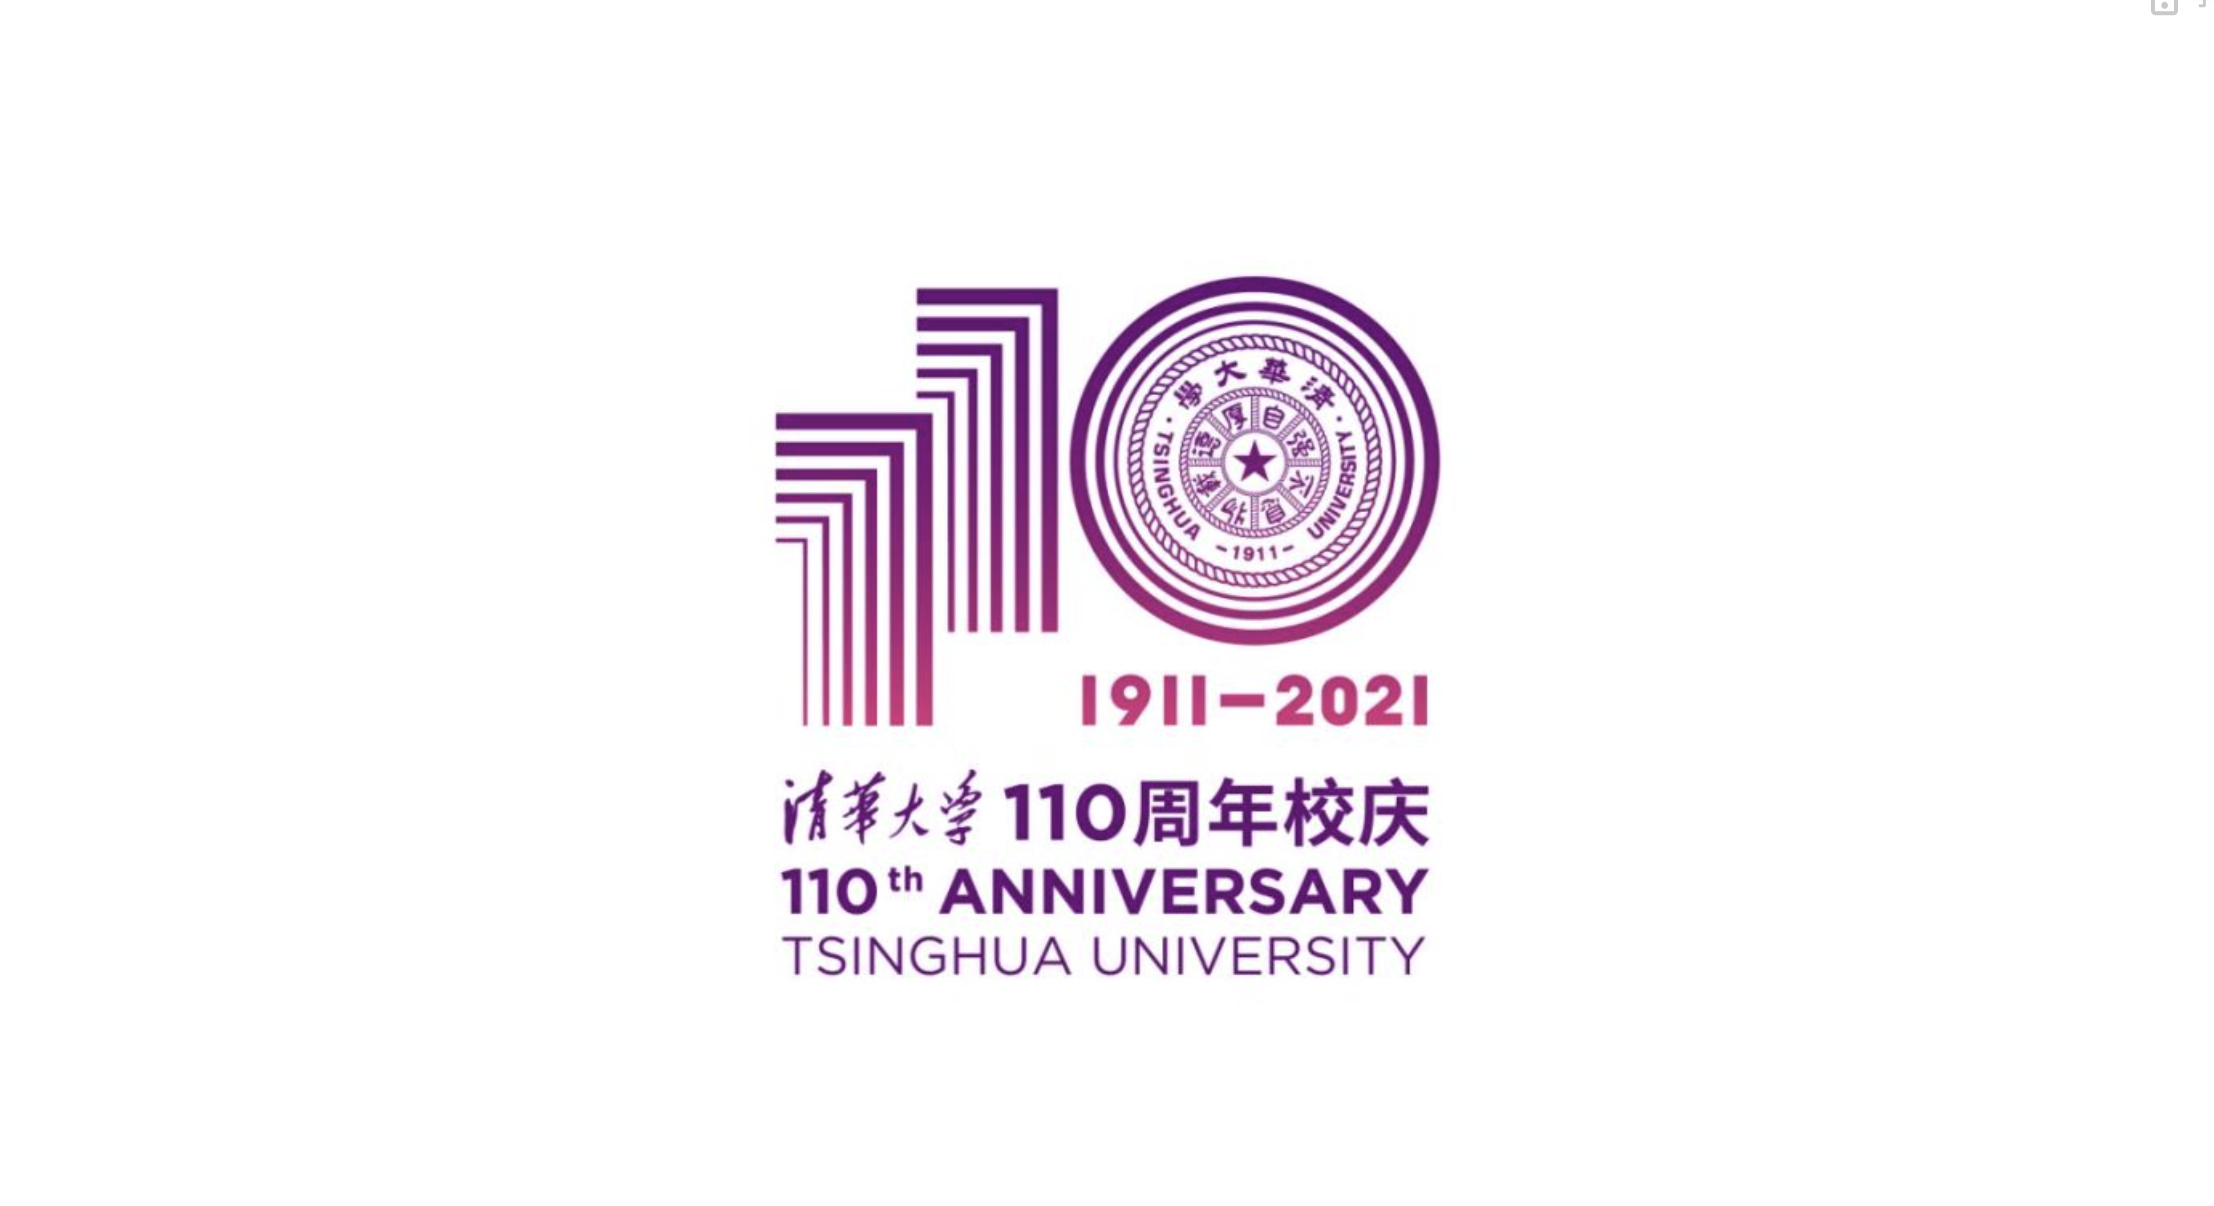 清华大学110周年校庆主题及logo正式发布